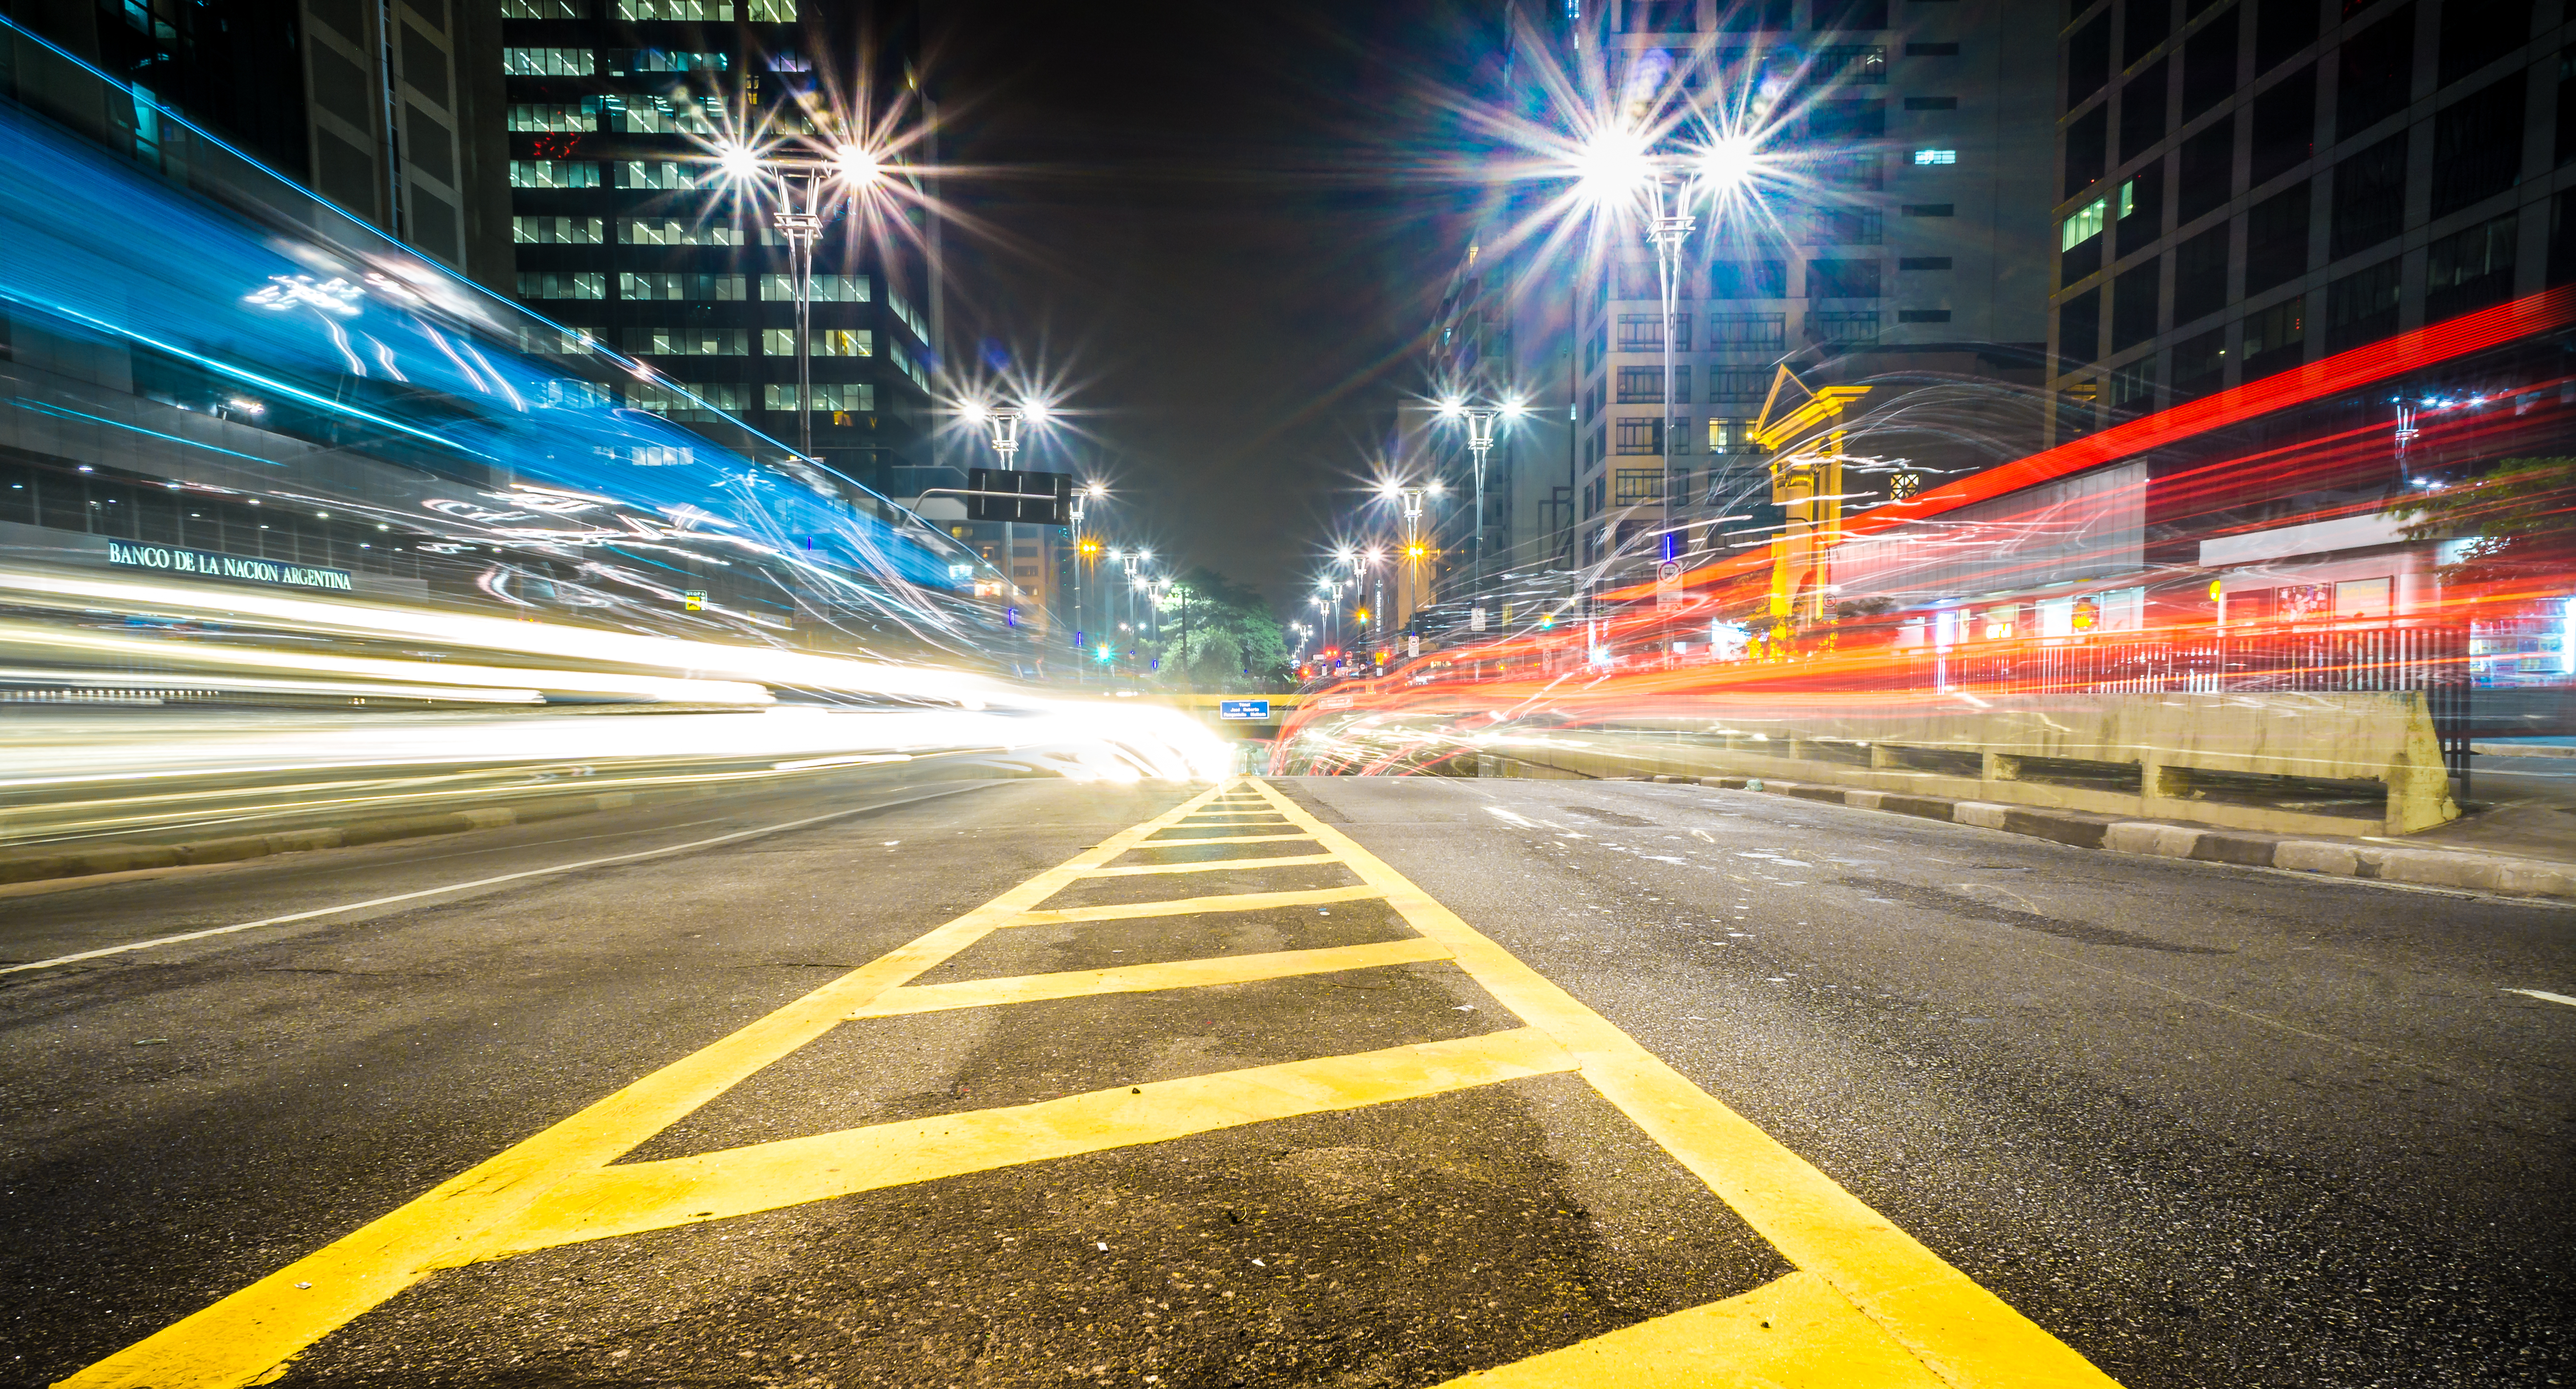 Imagem noturna de cidade mostra uma rodovia com postes de luz e carros em alta velocidade